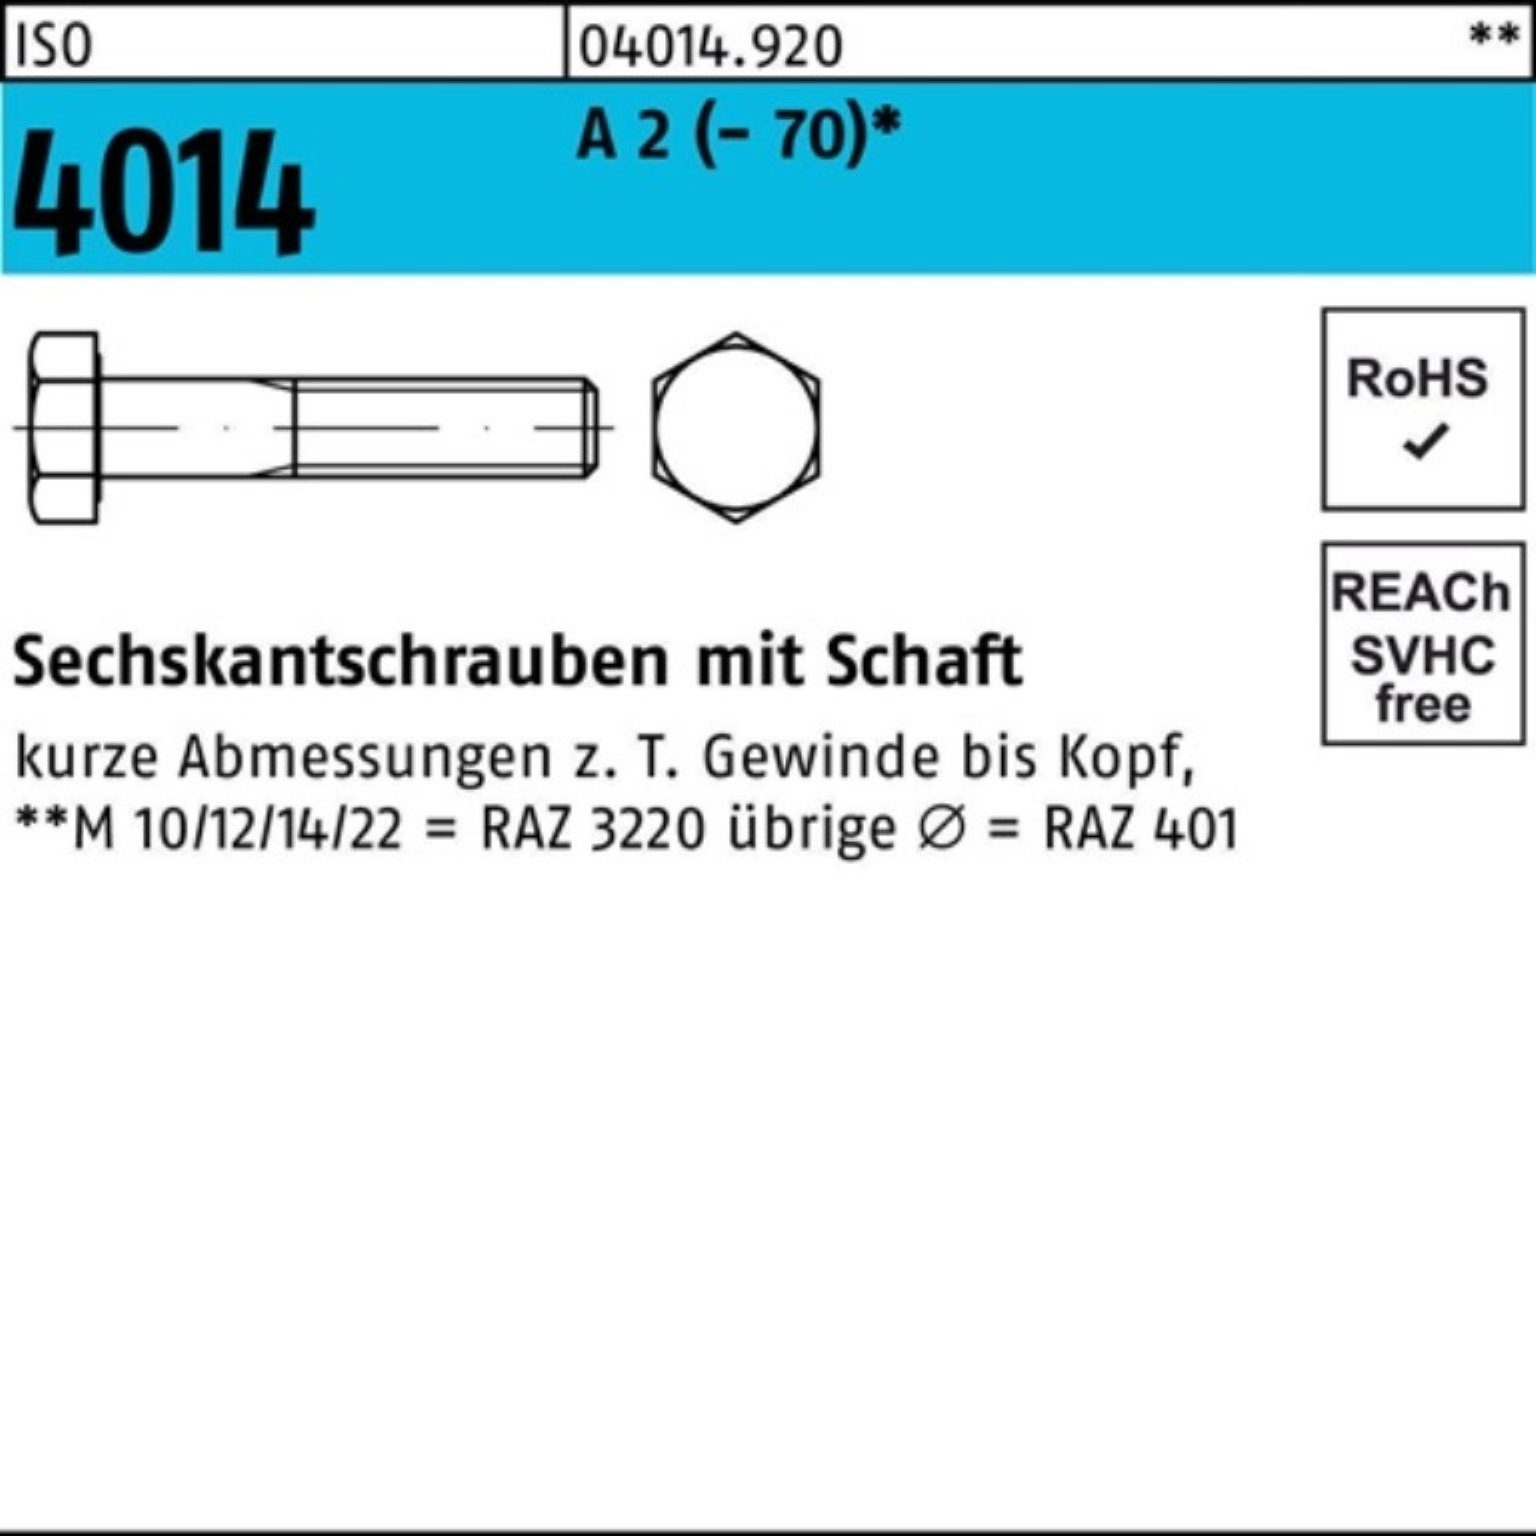 Bufab Sechskantschraube 100er Pack Sechskantschraube ISO 4014 Schaft M16x 80 A 2 (70) 25 St